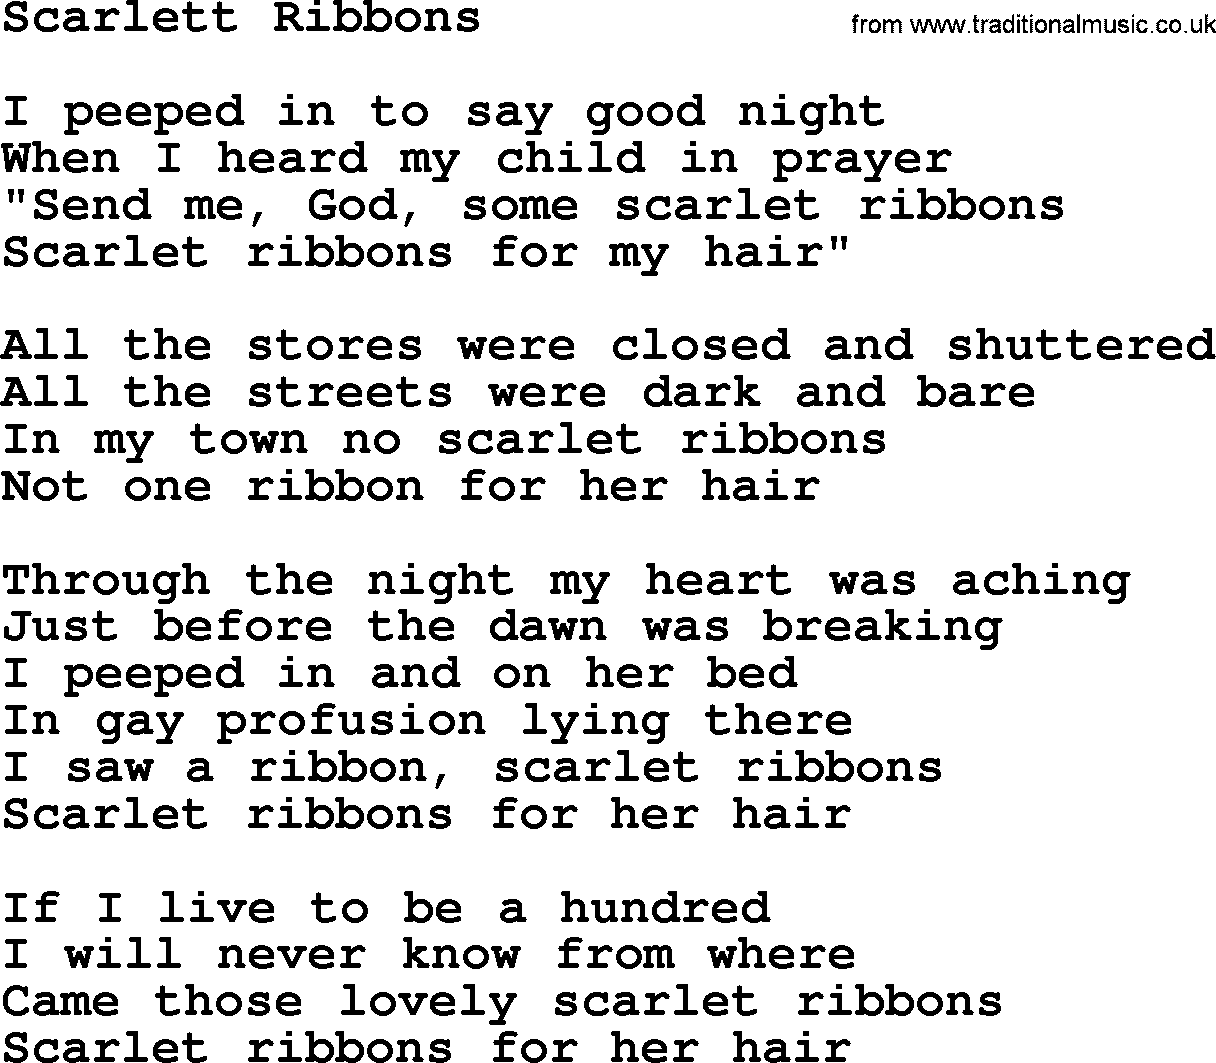 Willie Nelson song: Scarlett Ribbons lyrics